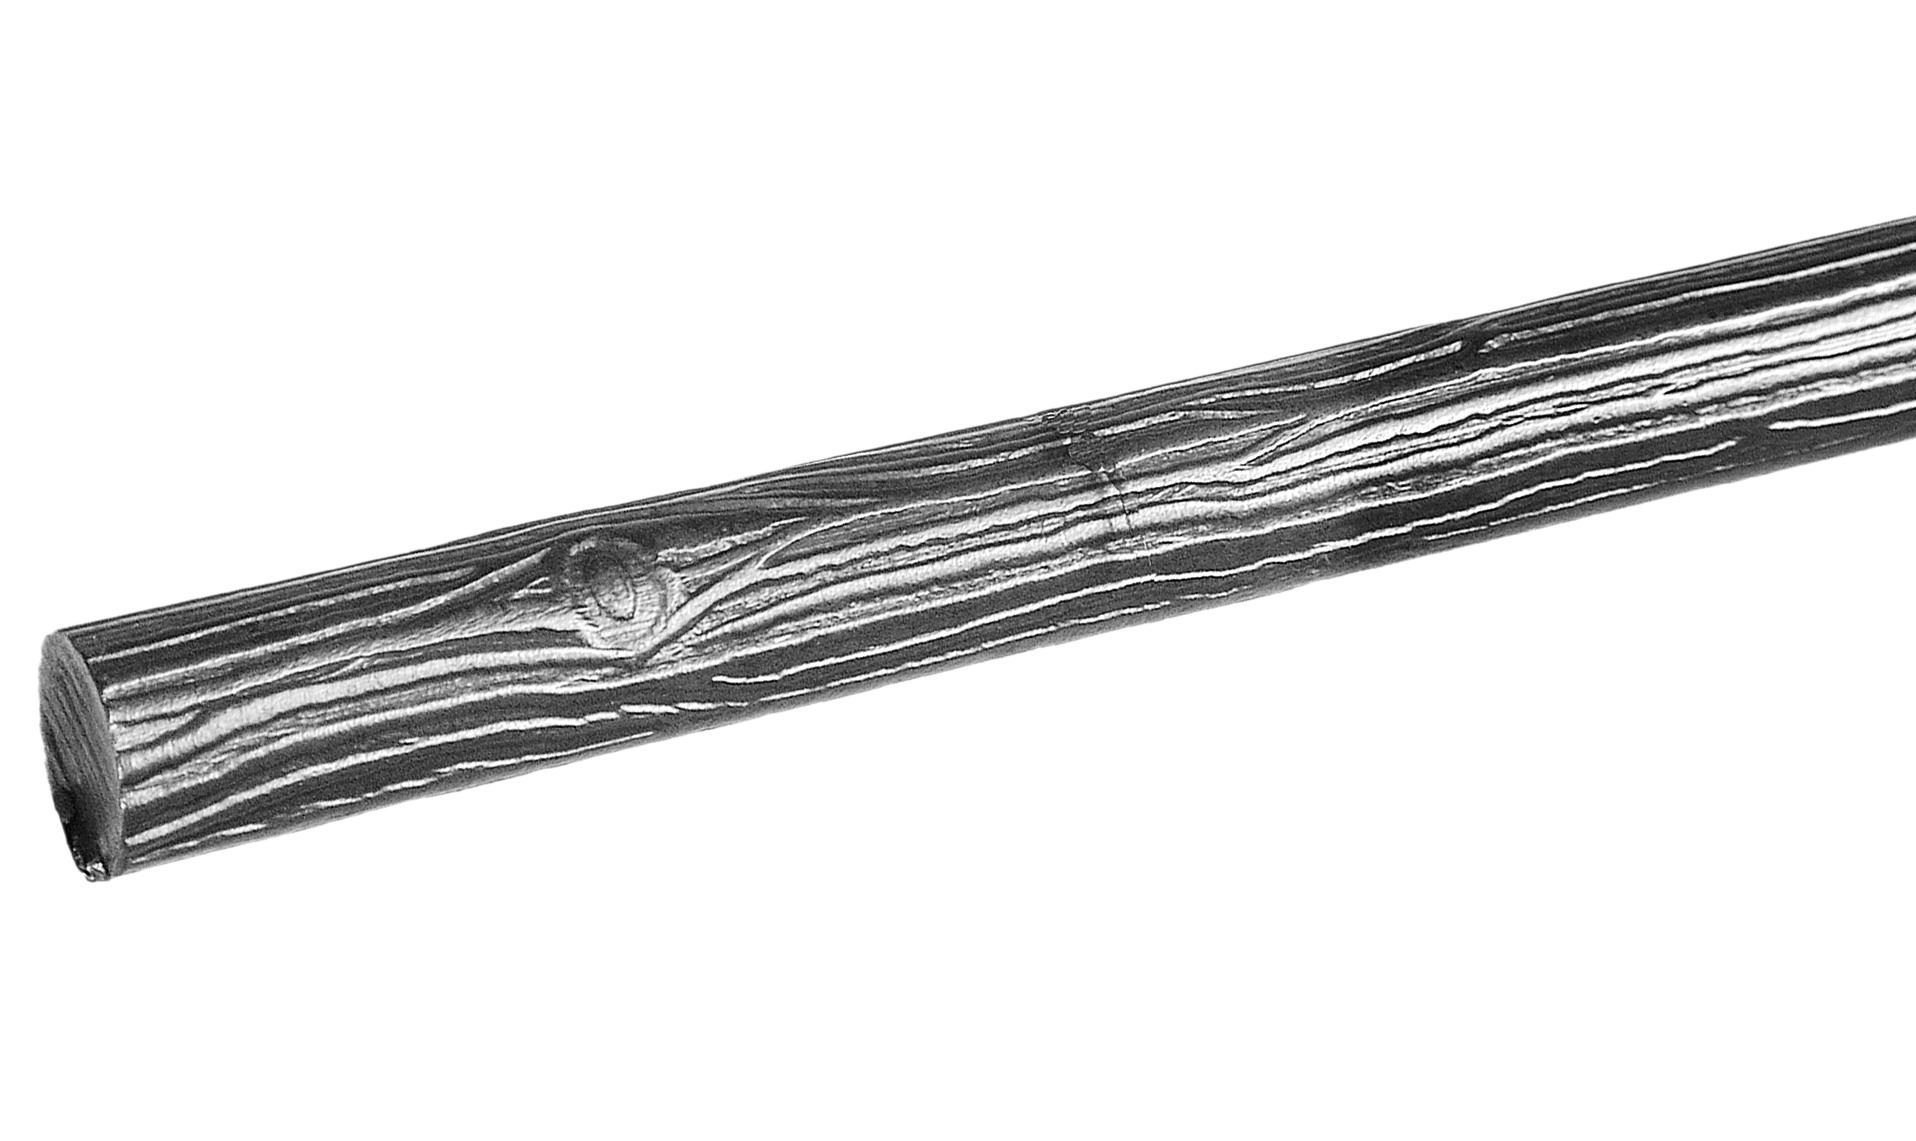 Barre en fer forgé style raisin de 3000mm de longueur et 8mm de diamètre.